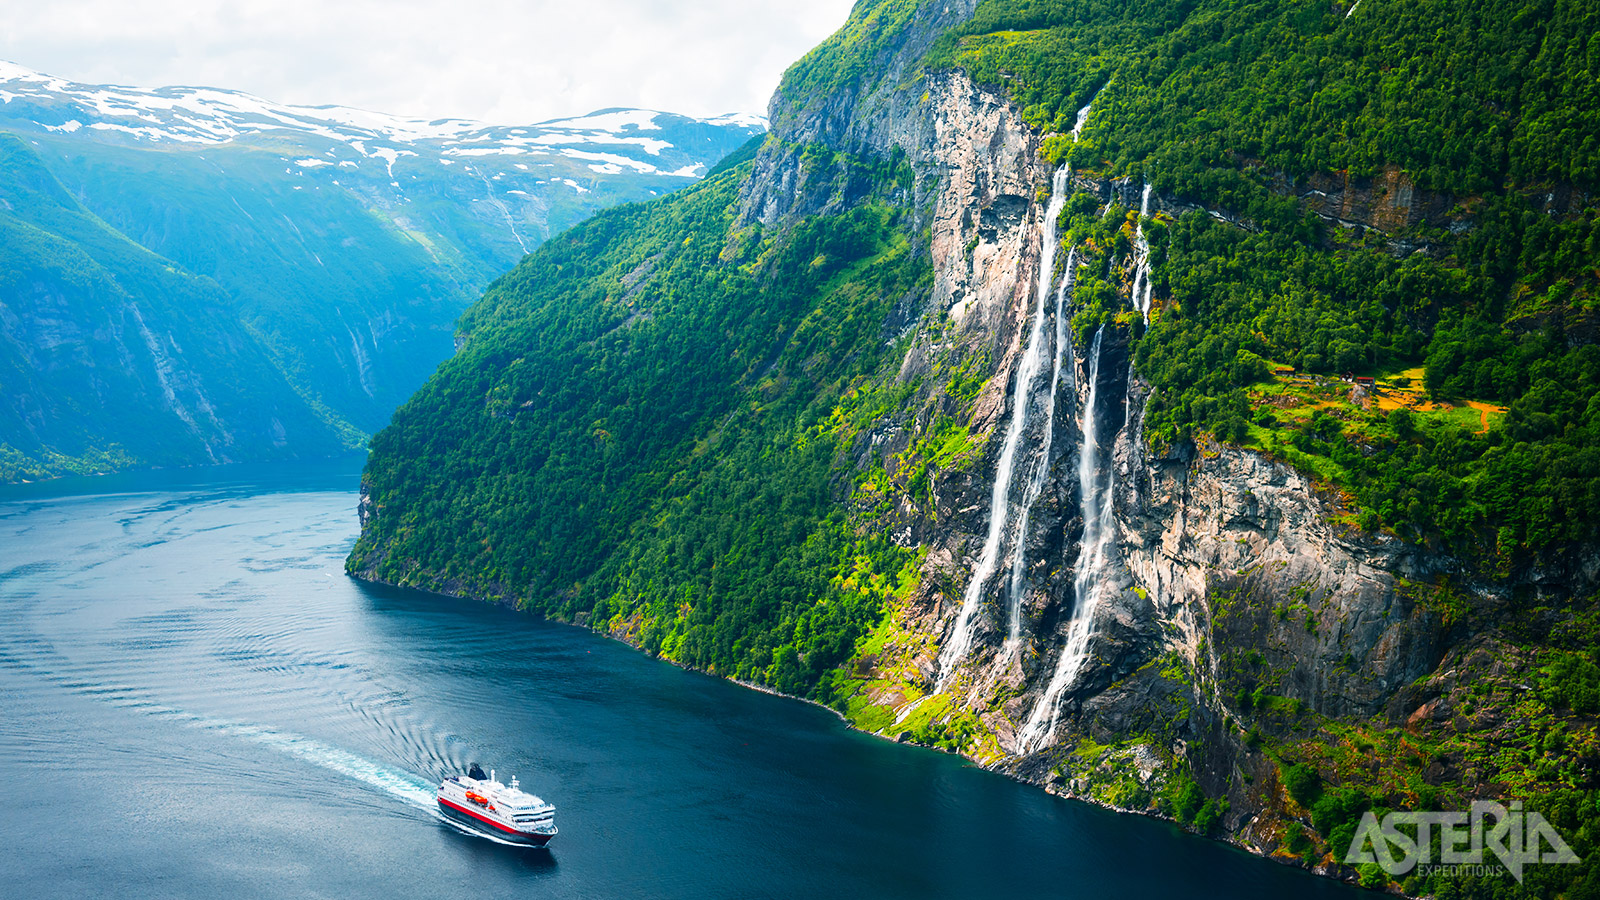 Bij afreizen in juni, juli en augustus vaart het schip als extra door de diepblauwe Geirangerfjord